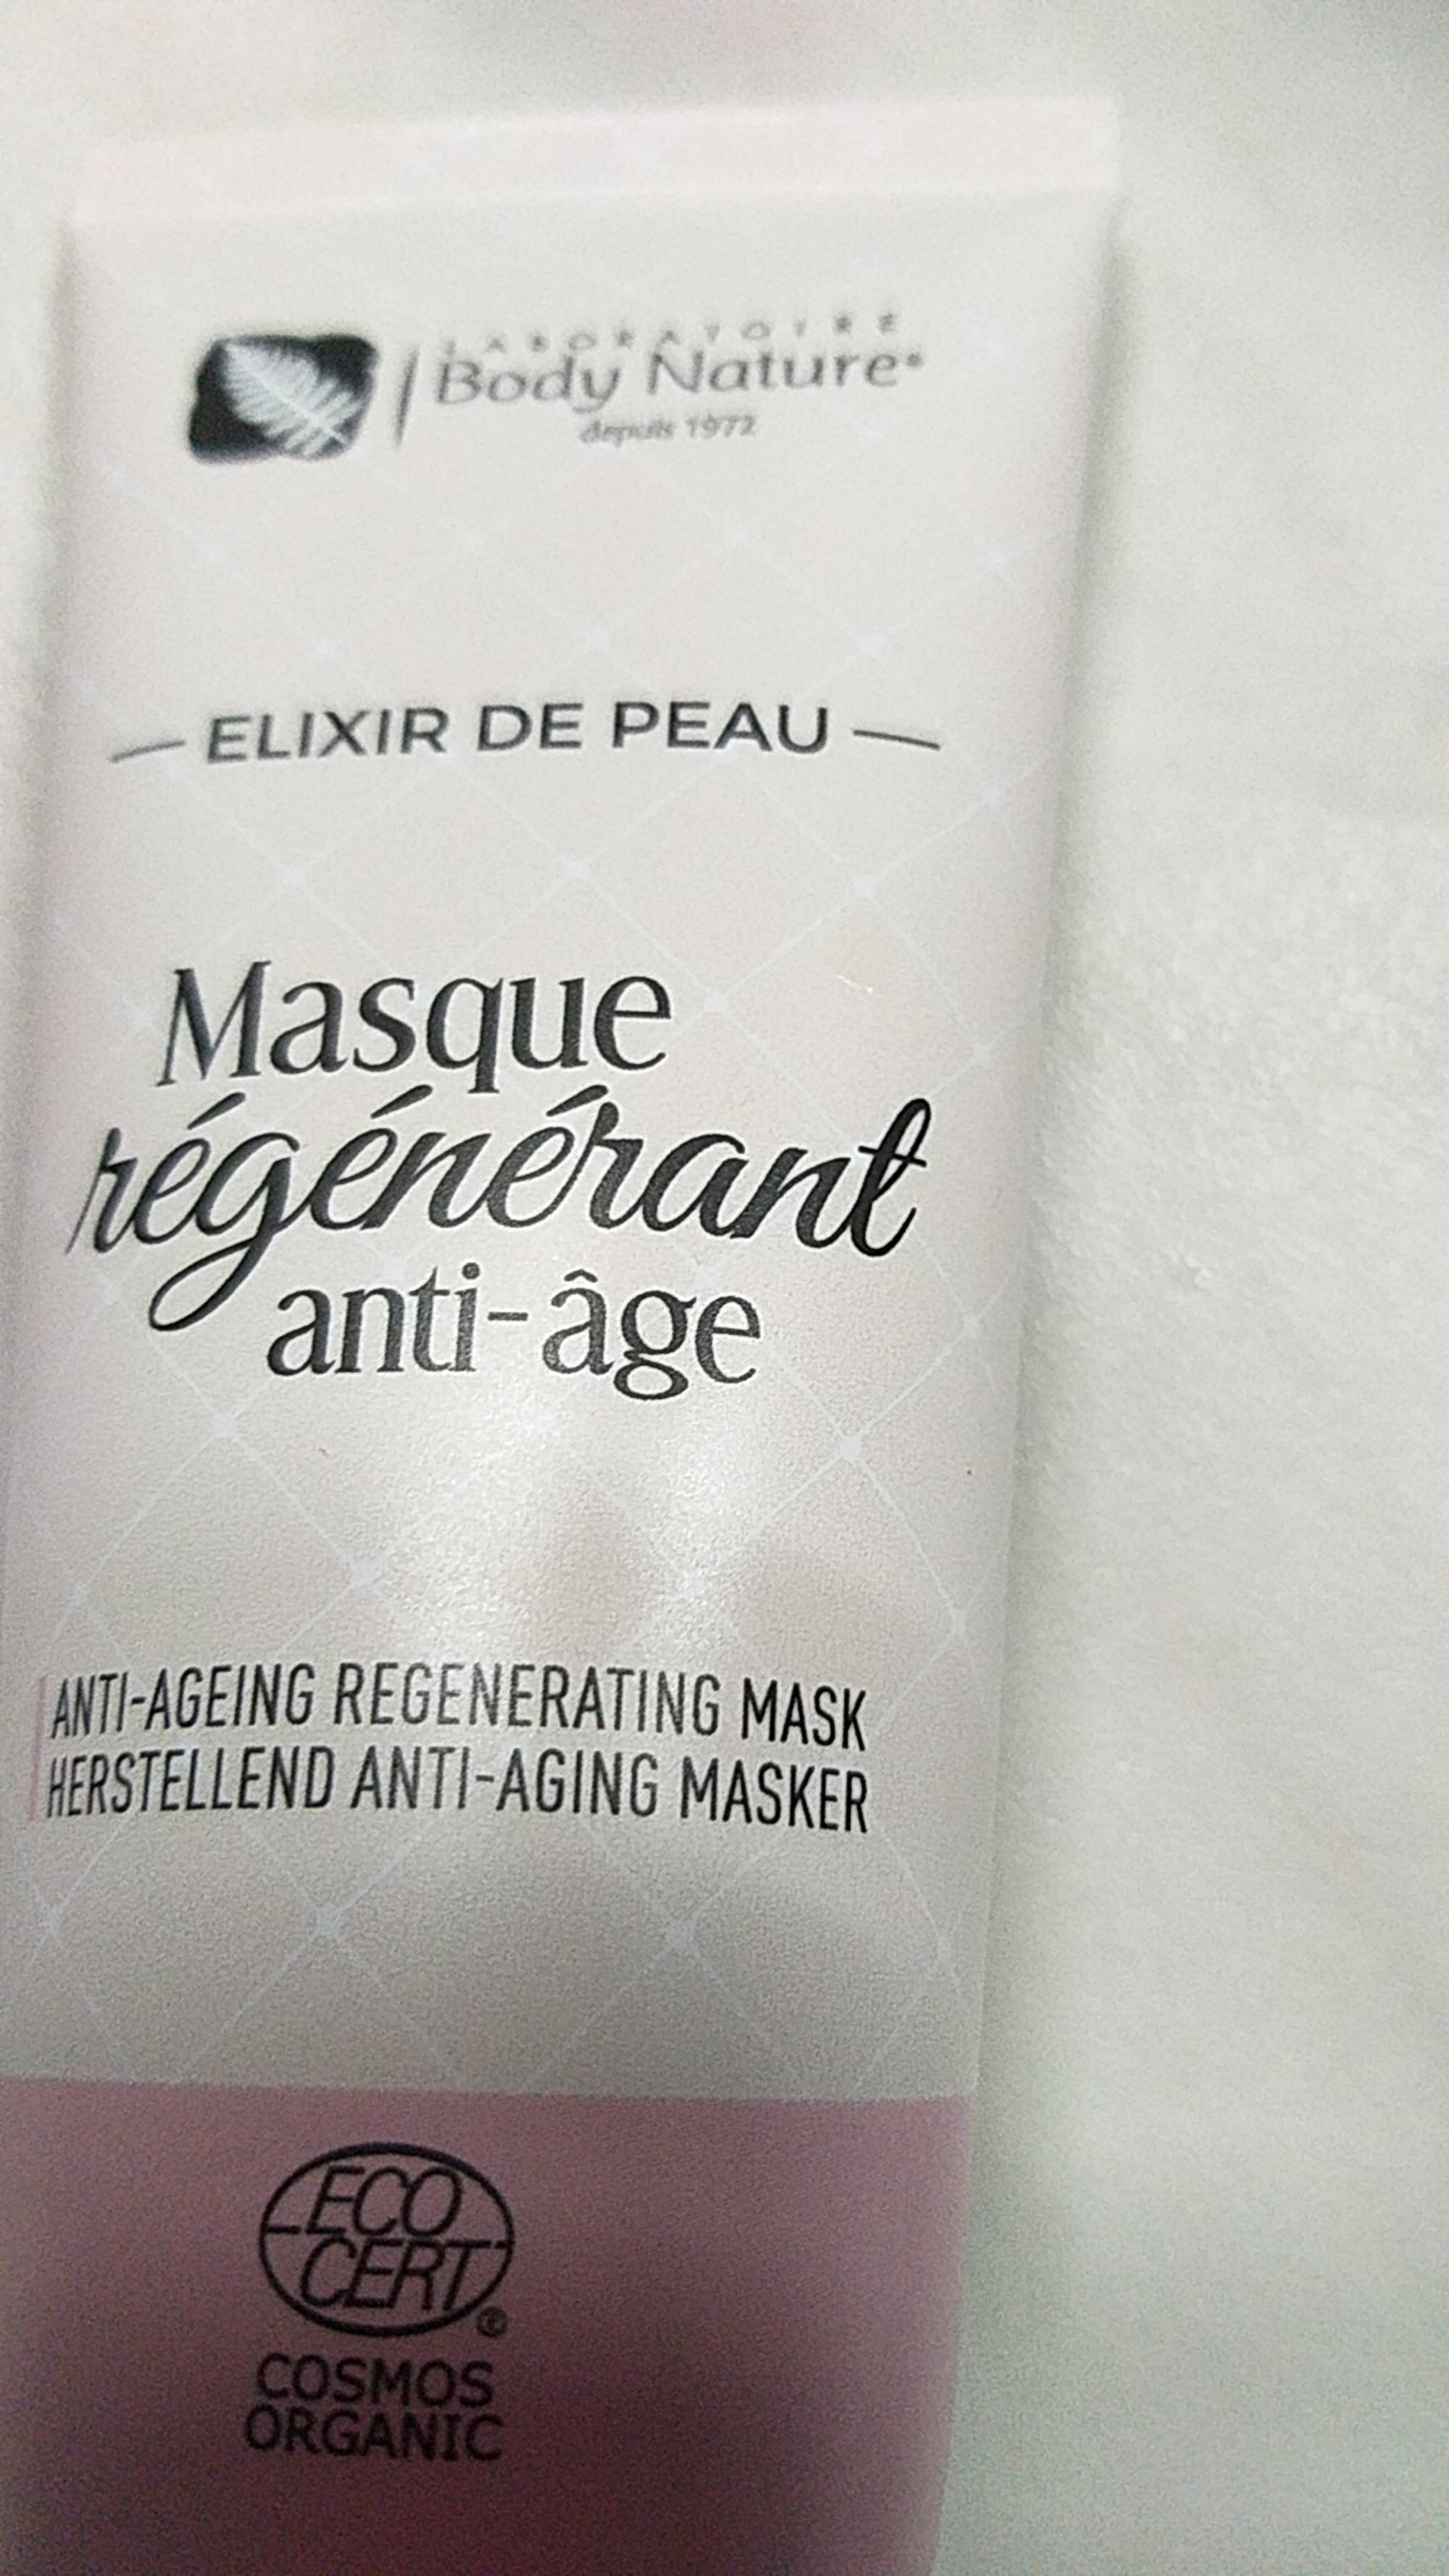 BODY NATURE - Elixir de peau - Masque régénérant anti-âge